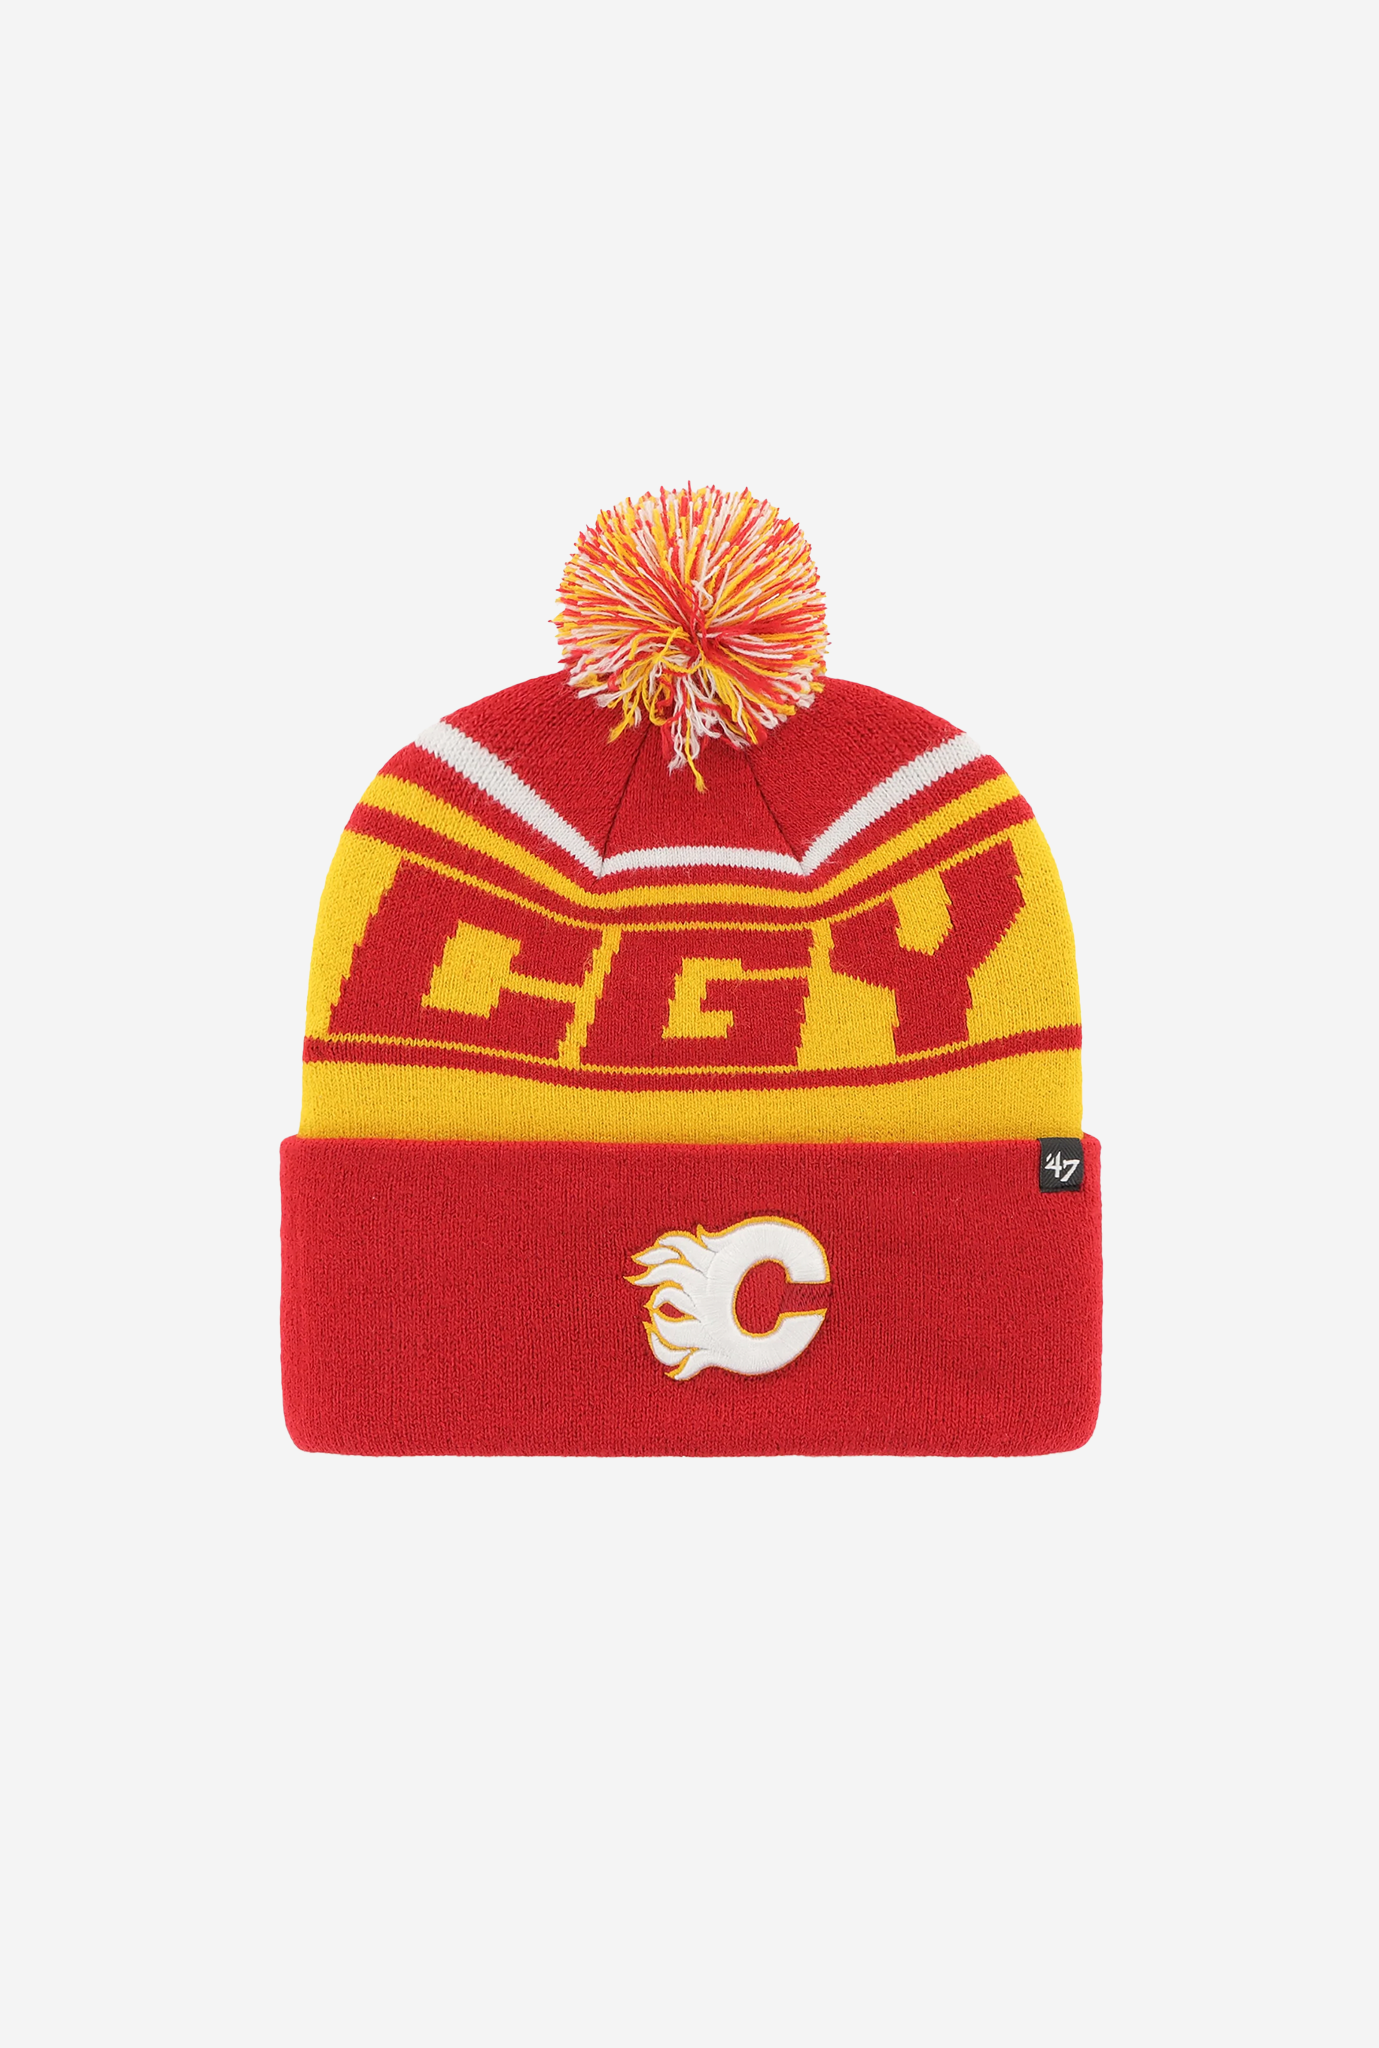 Calgary Flames Stylus Cuff Knit Hat